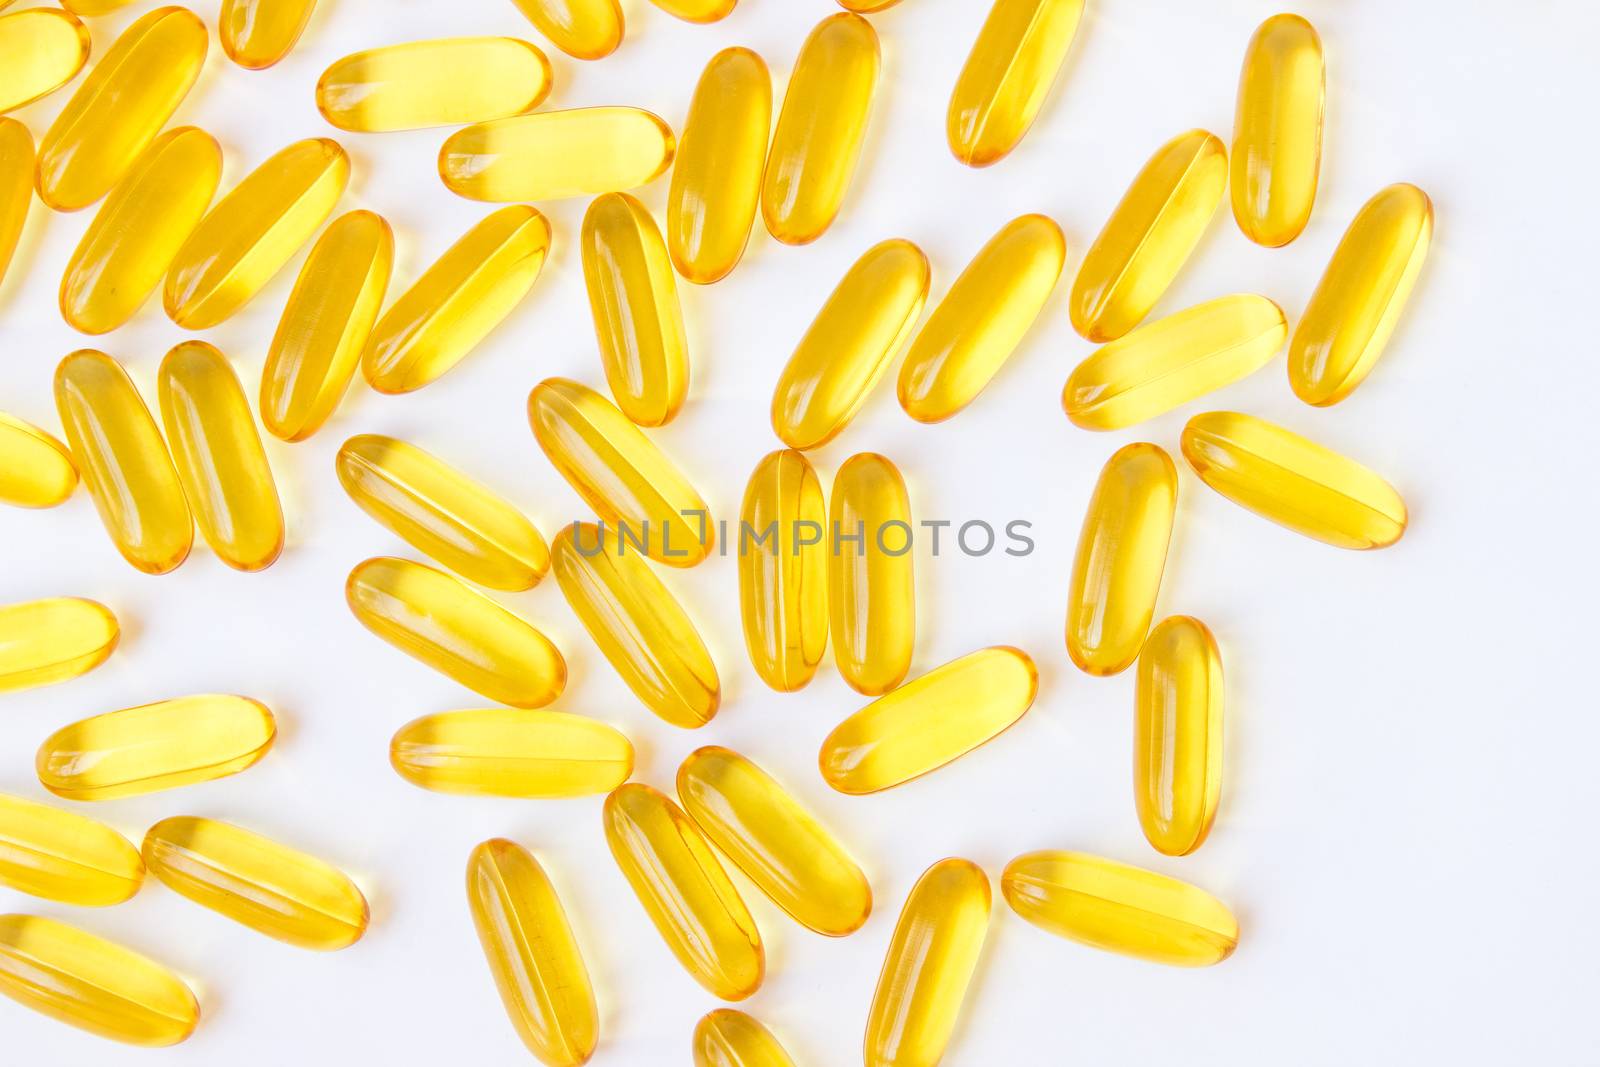 The fish oil capsules